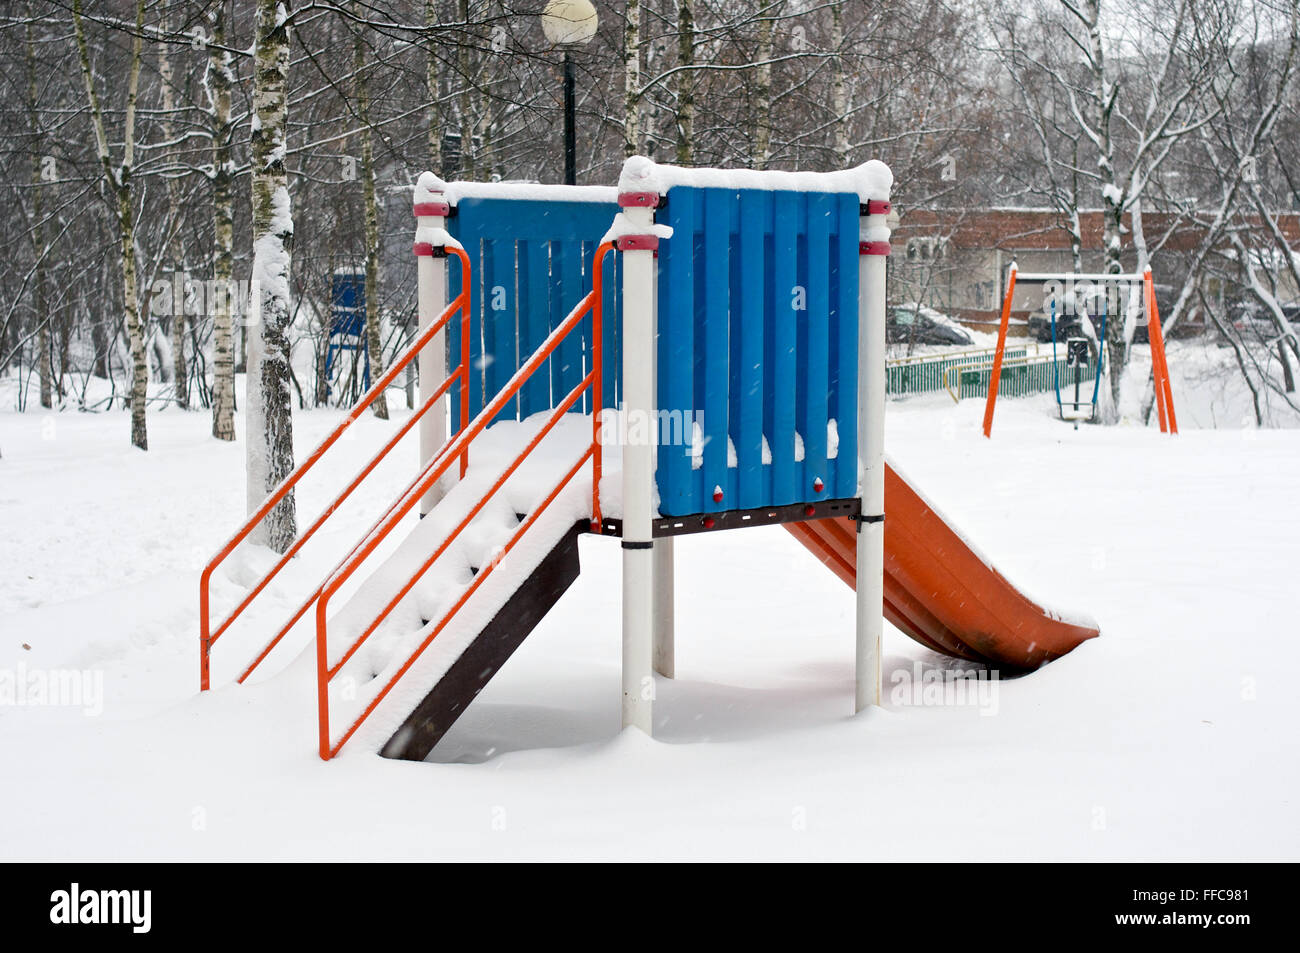 Kinder Rutsche im Winter im Schnee in Russland Stockfotografie - Alamy